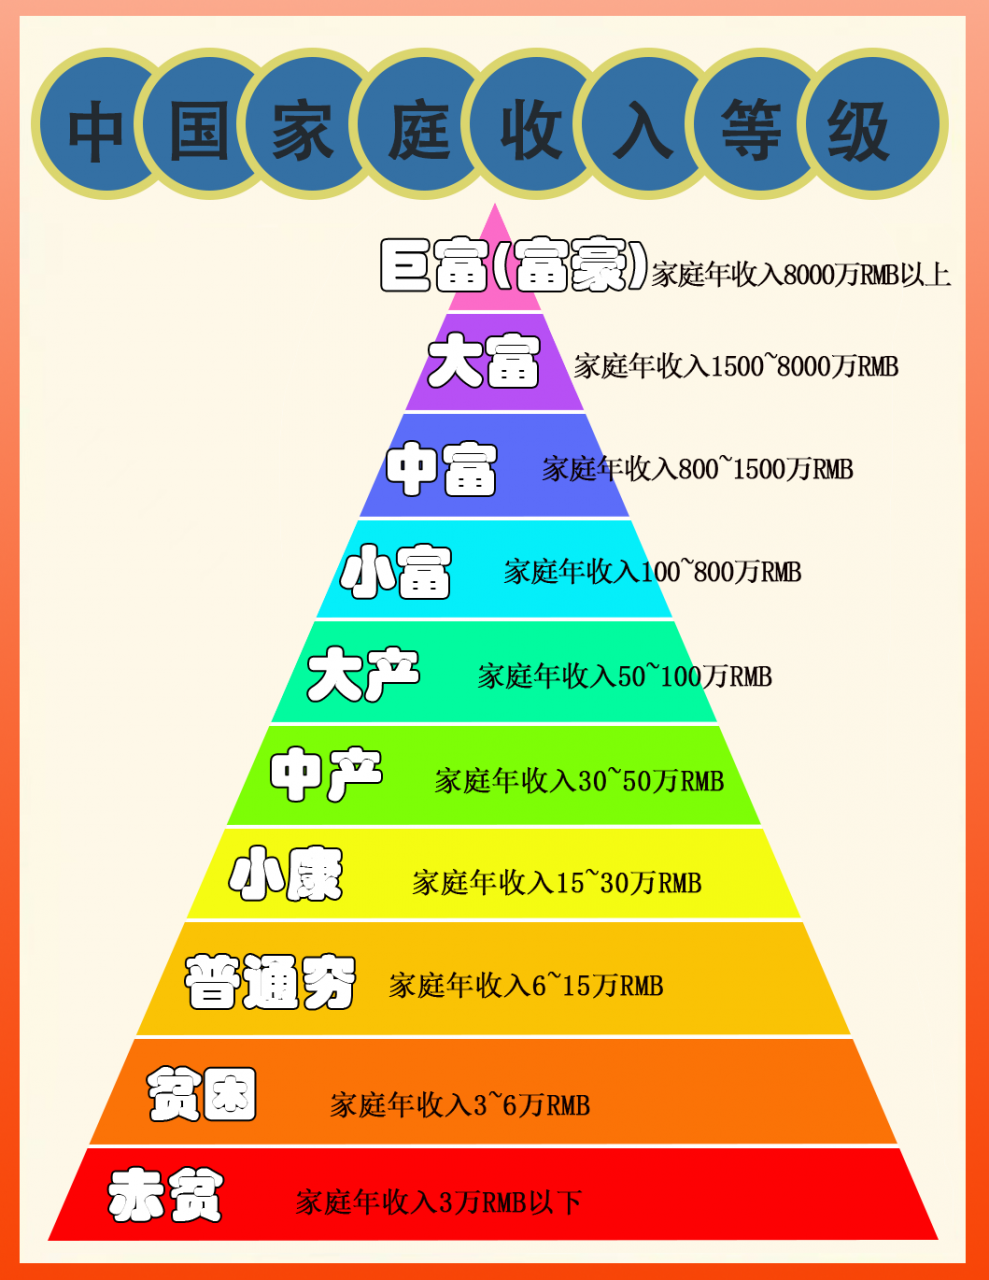 中国中产阶级标准2022资产(中国家庭收入等级阶层划分)